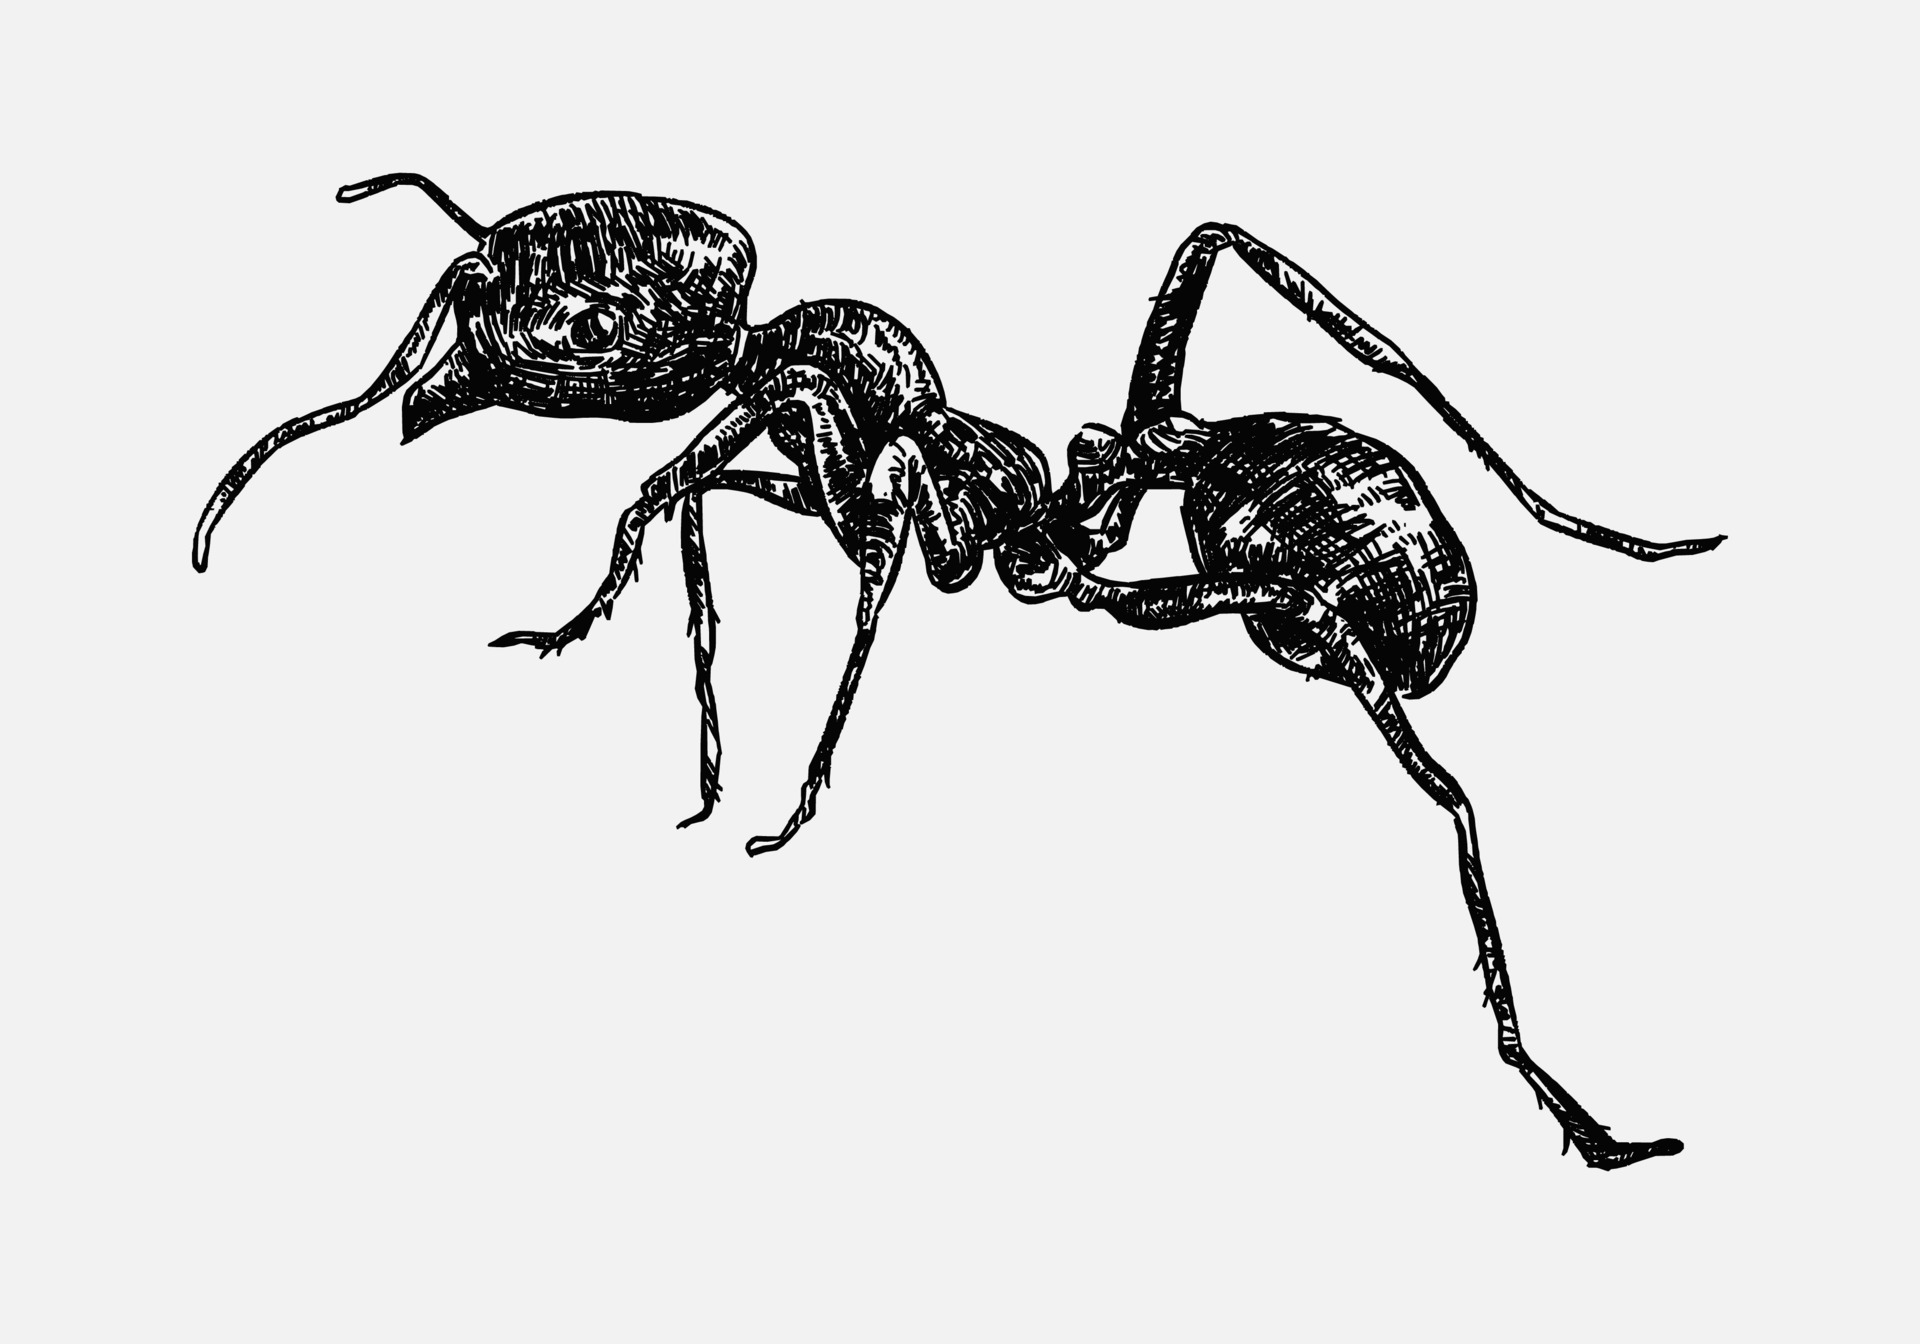 Share 142+ sketch ant design super hot - in.eteachers